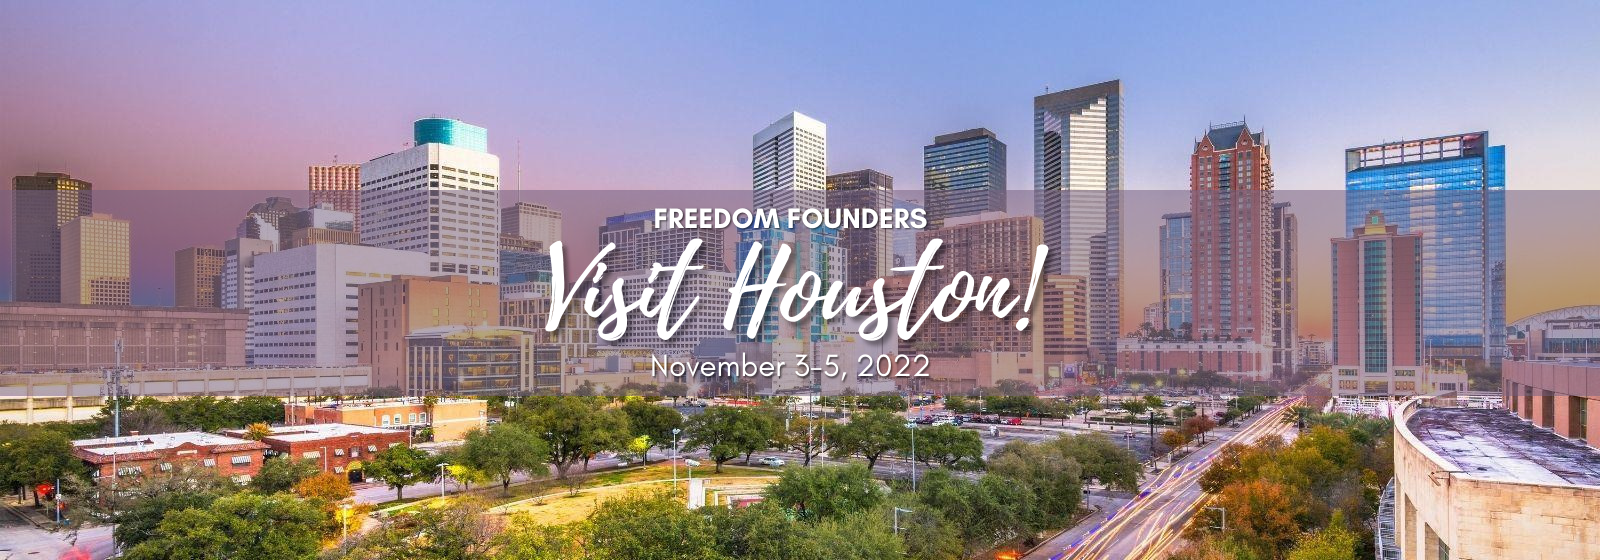 Visit Houston!